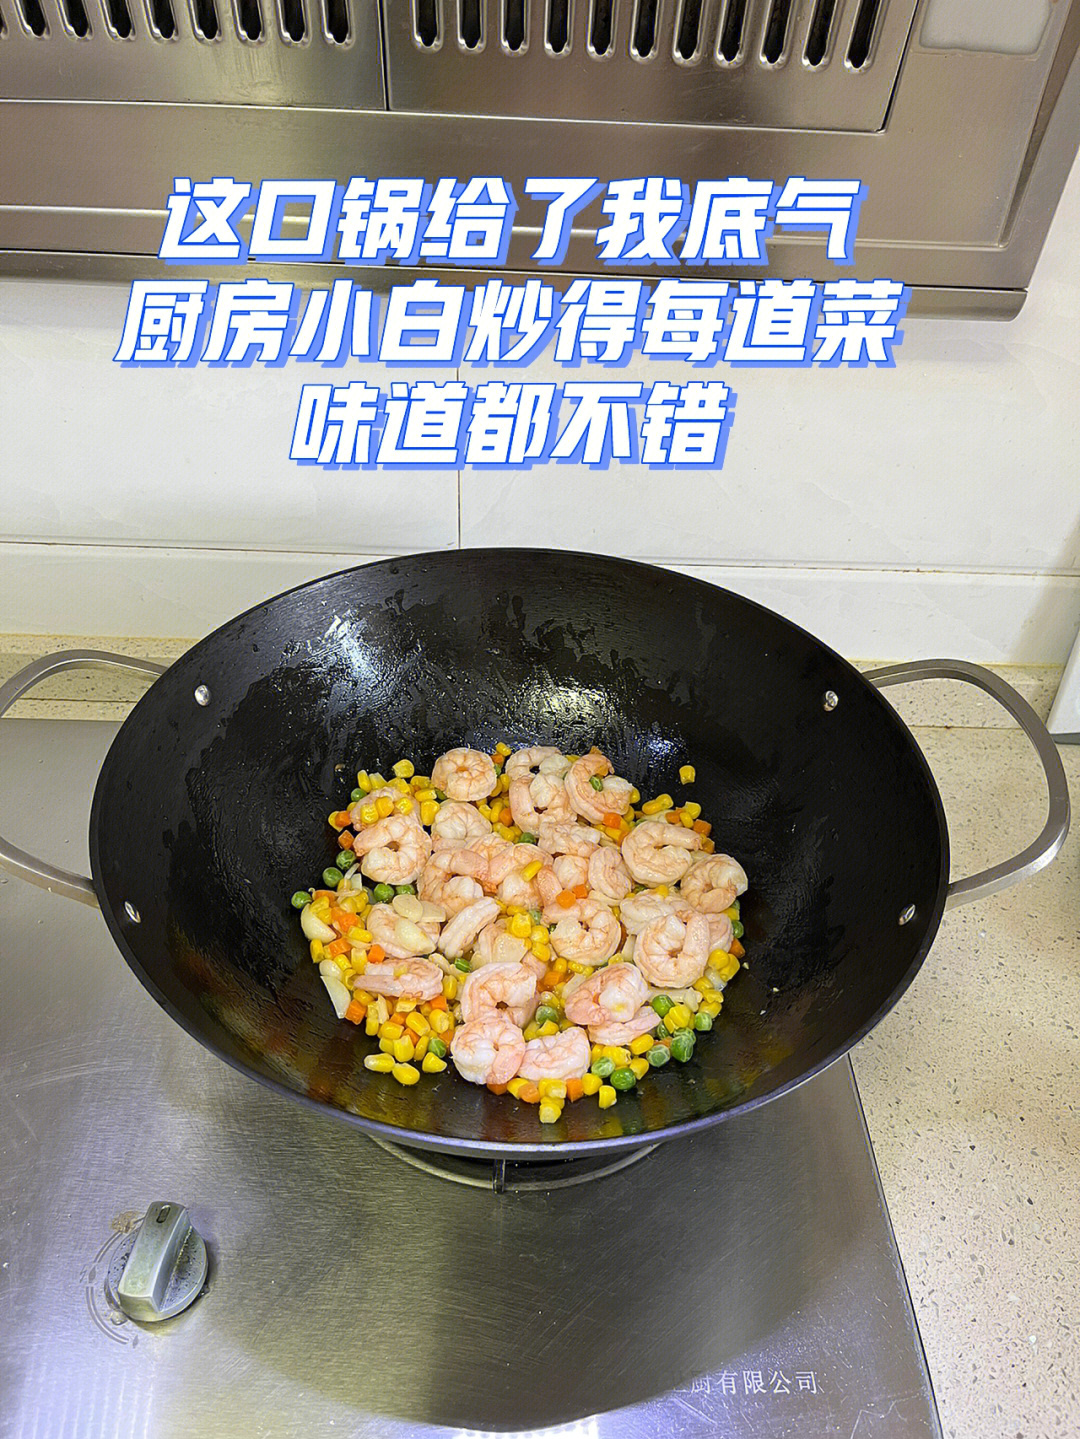 铸铁锅炒虾仁肉质鲜嫩玉米青豆也好吃